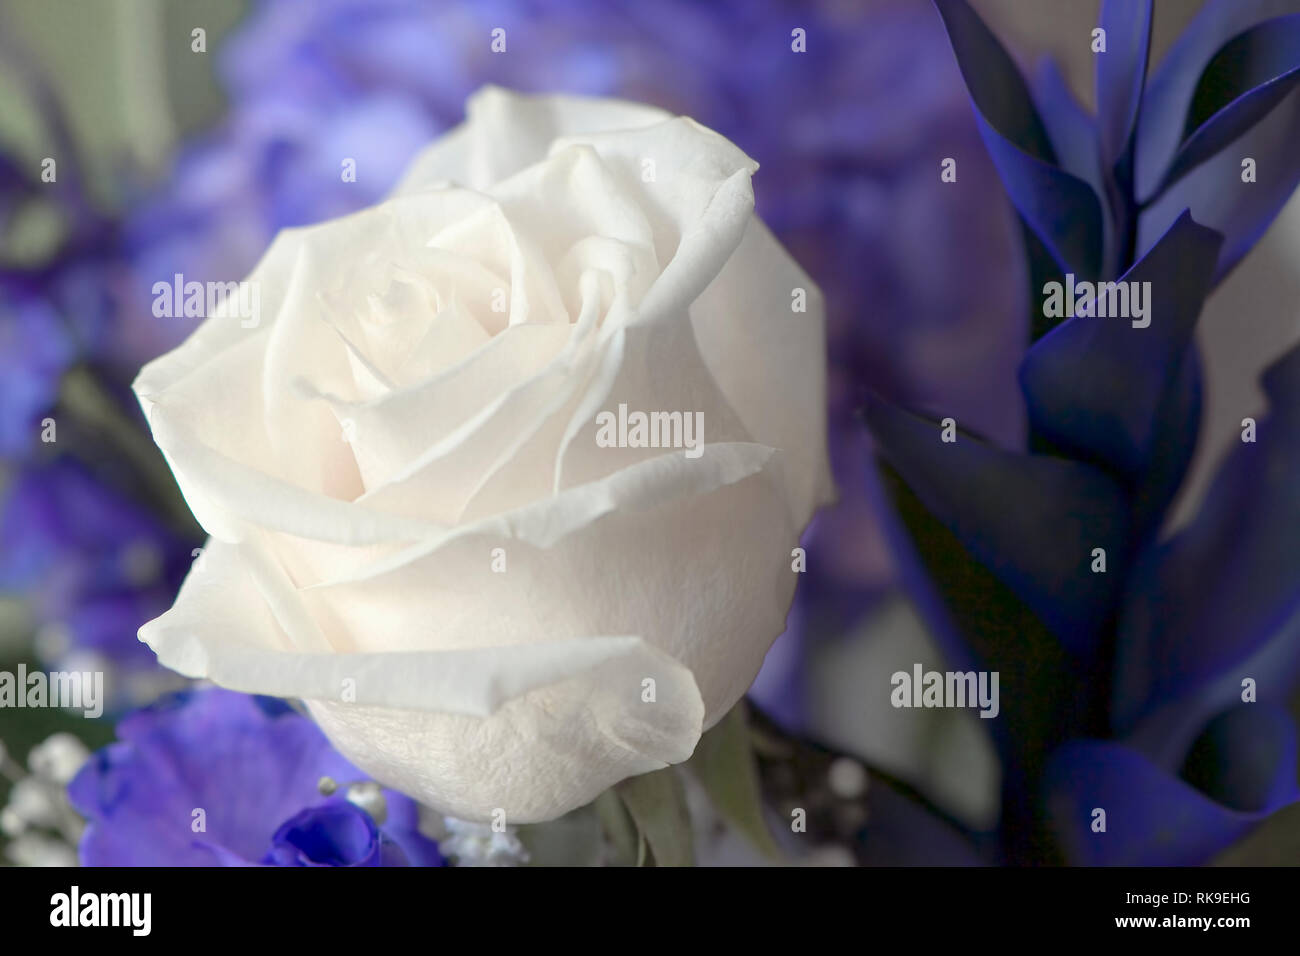 Eine weiße Rose (Rosa) von einem floralen Bouquet in einer Vase mit einem violetten floral background. Stockfoto